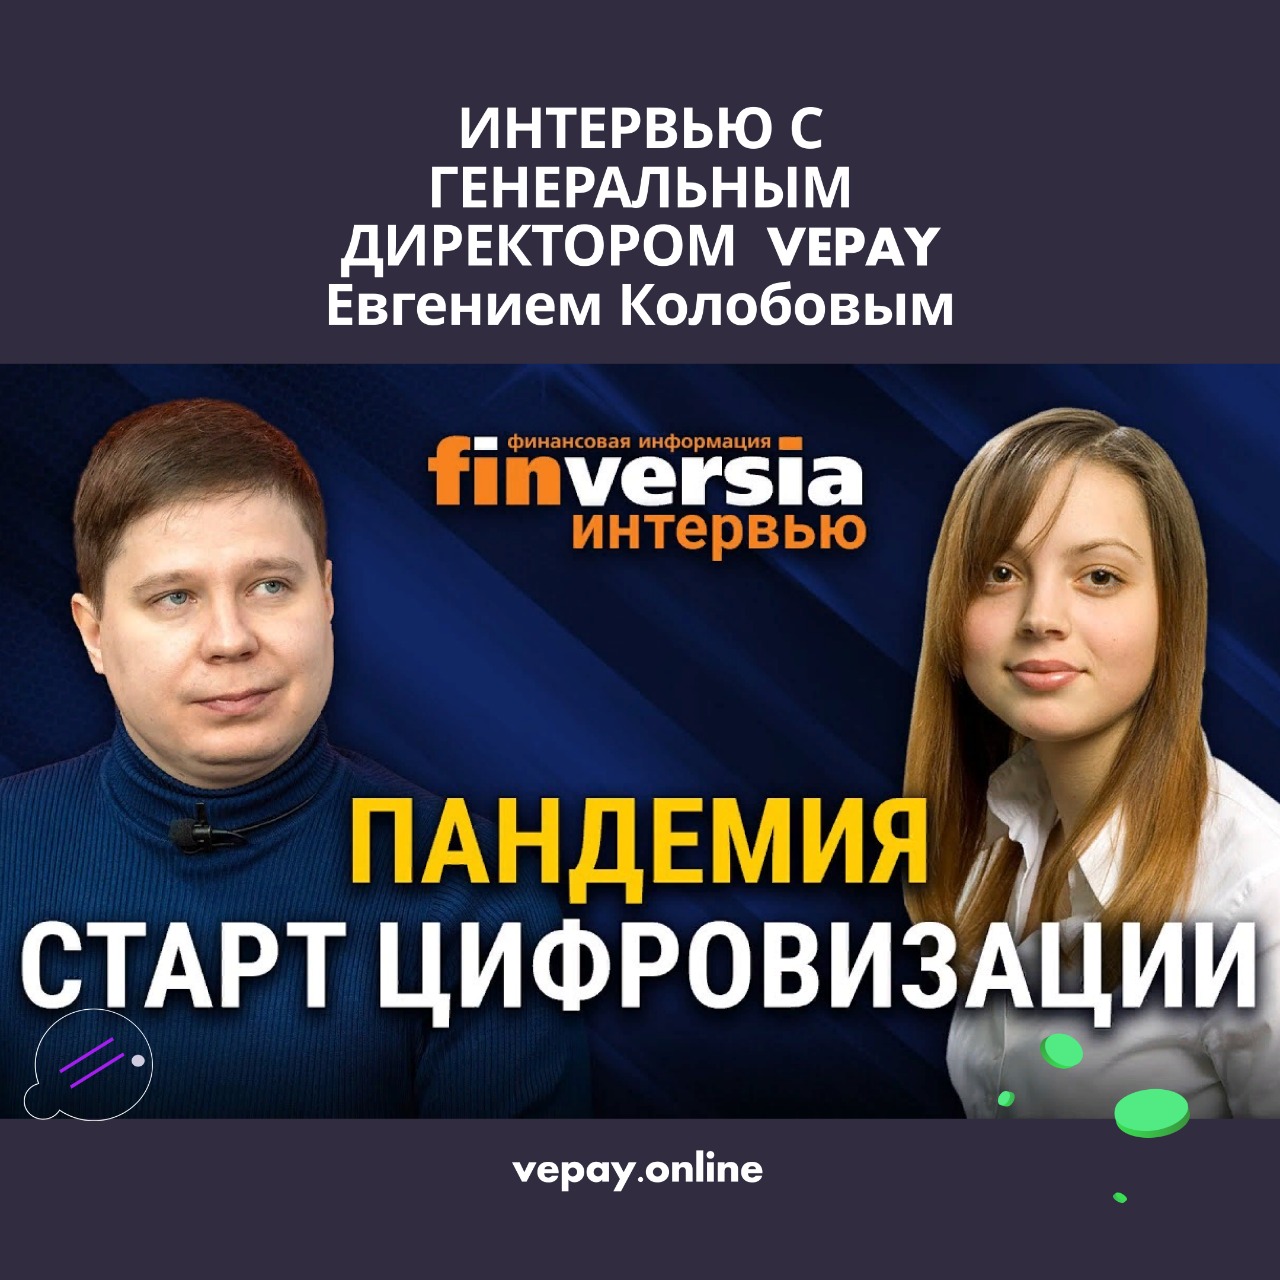 VEPAY — Евгений Колобов: «Пандемия – старт цифровизации, которая интересна и выгодна всем участникам этого процесса»